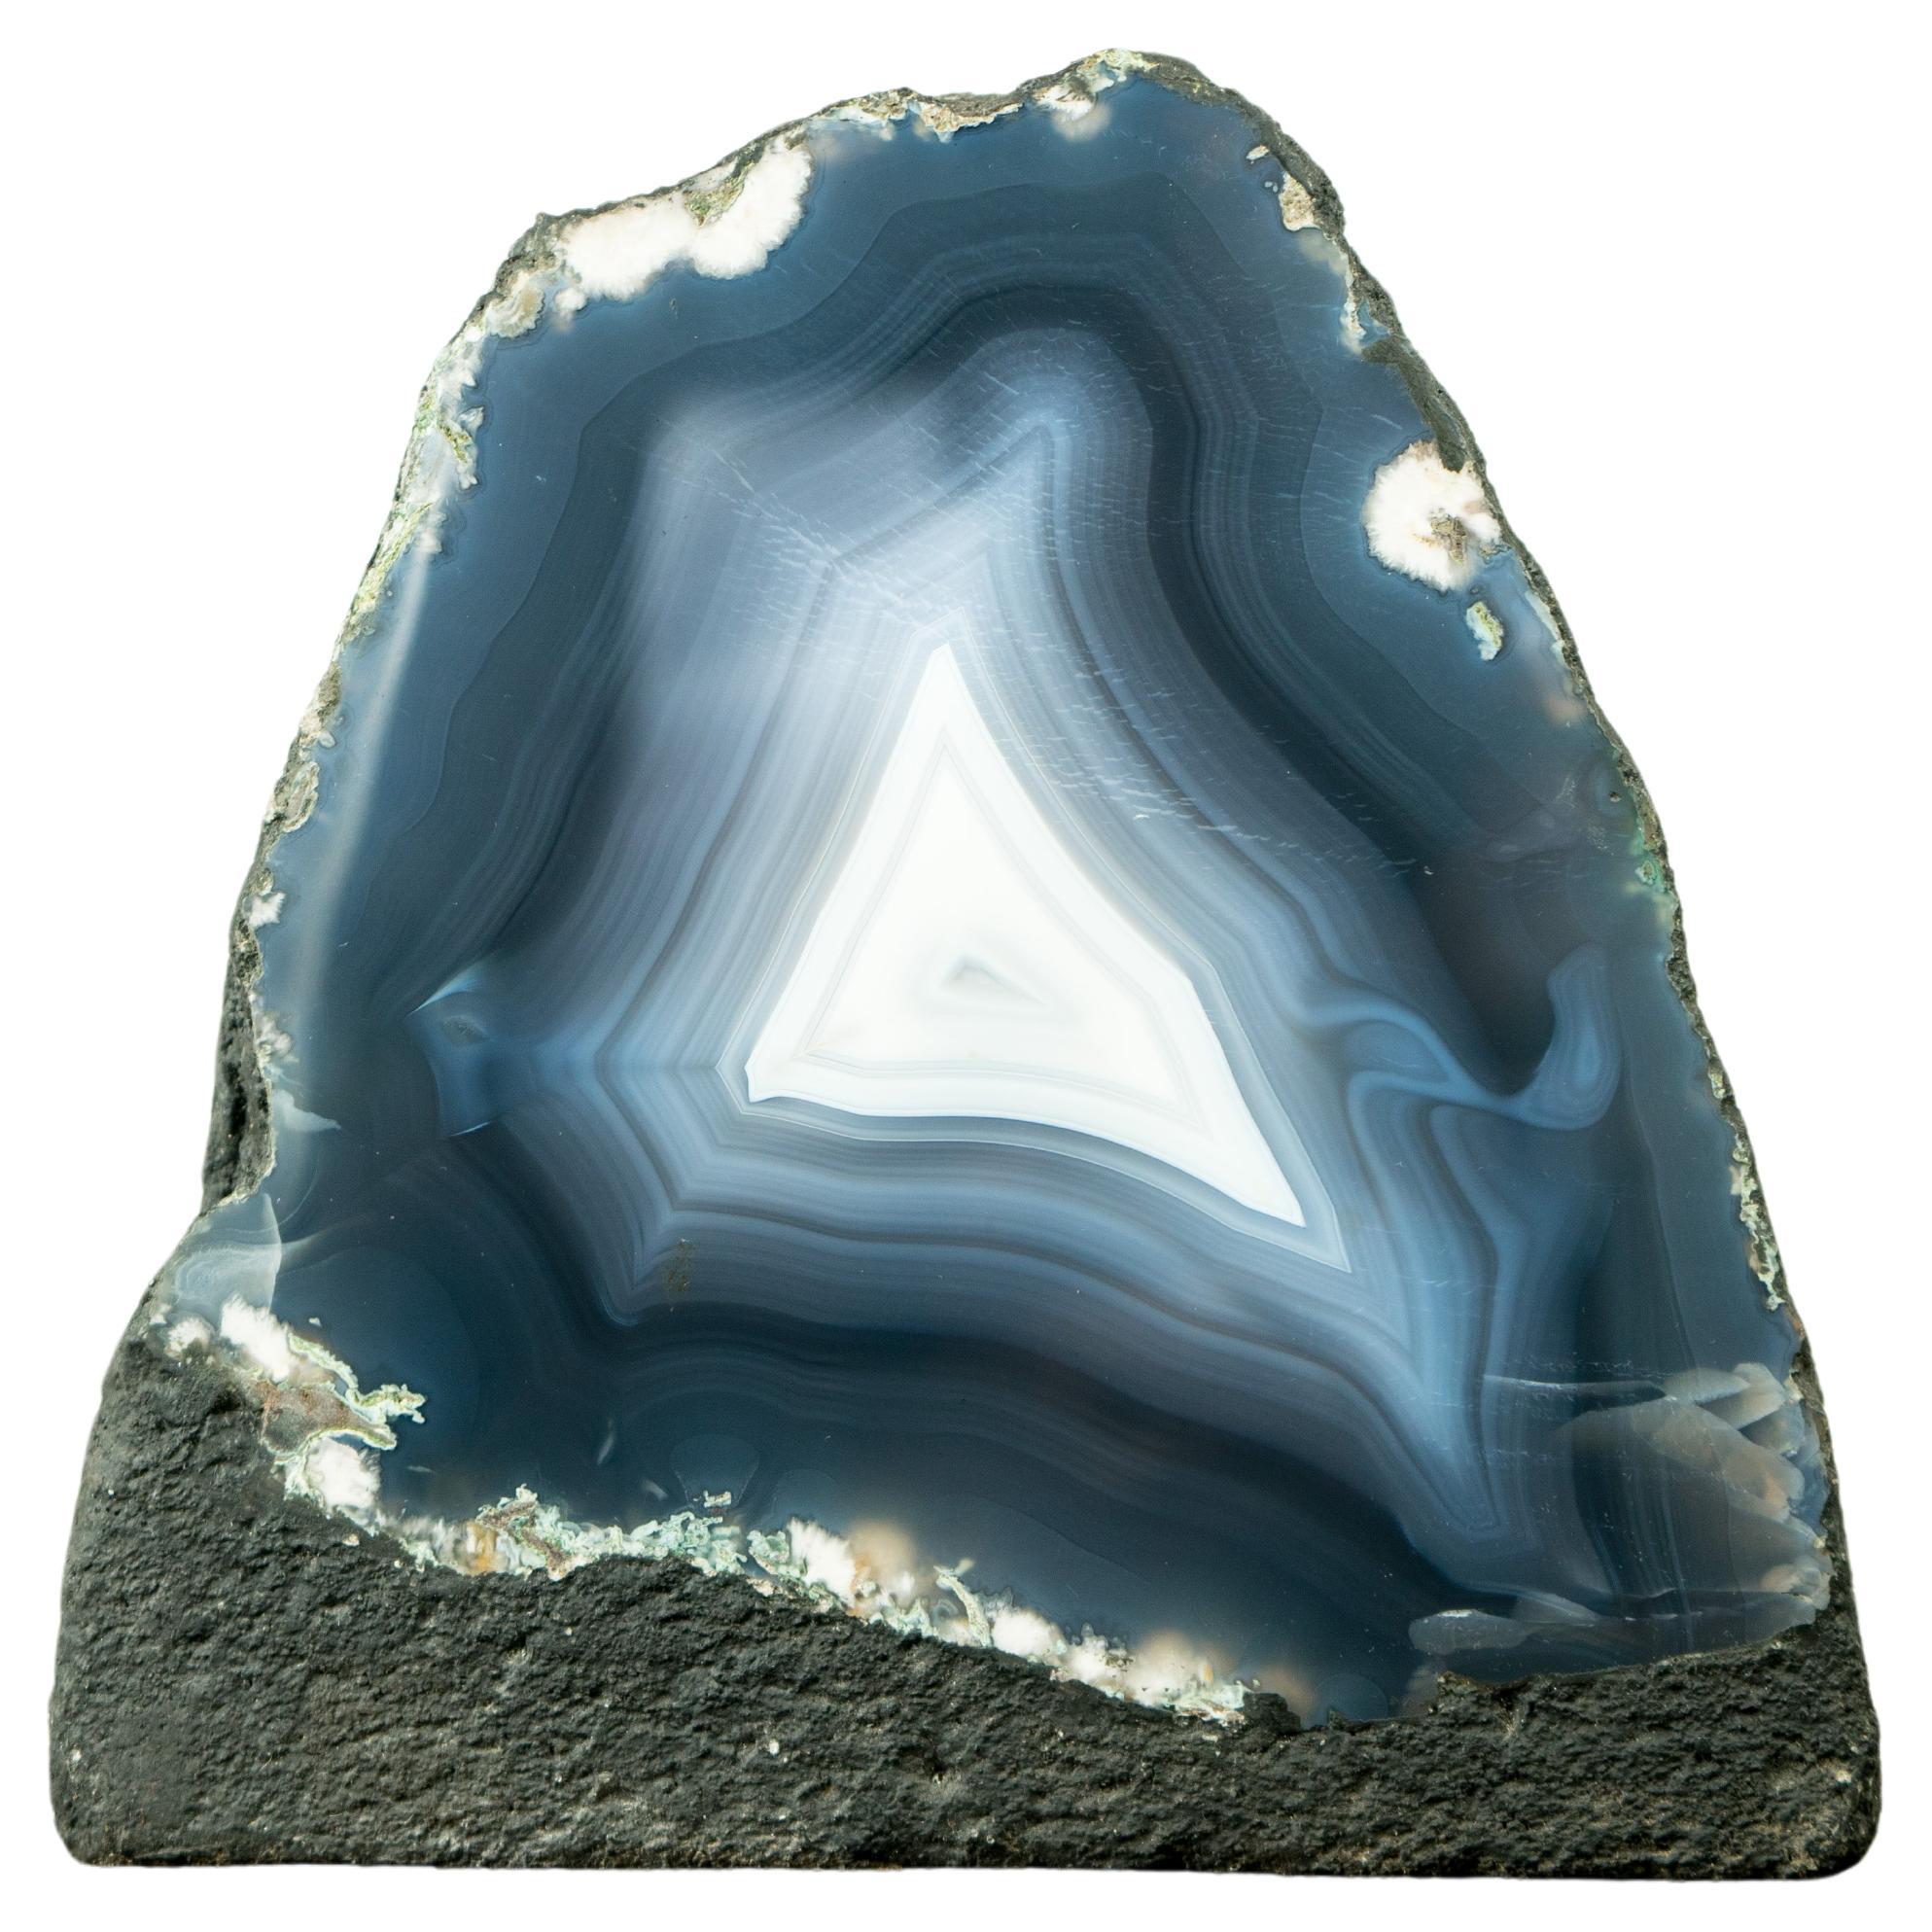 Geode d'agate bleu marine et dentelles d'agate blanche entièrement naturelles, art naturel